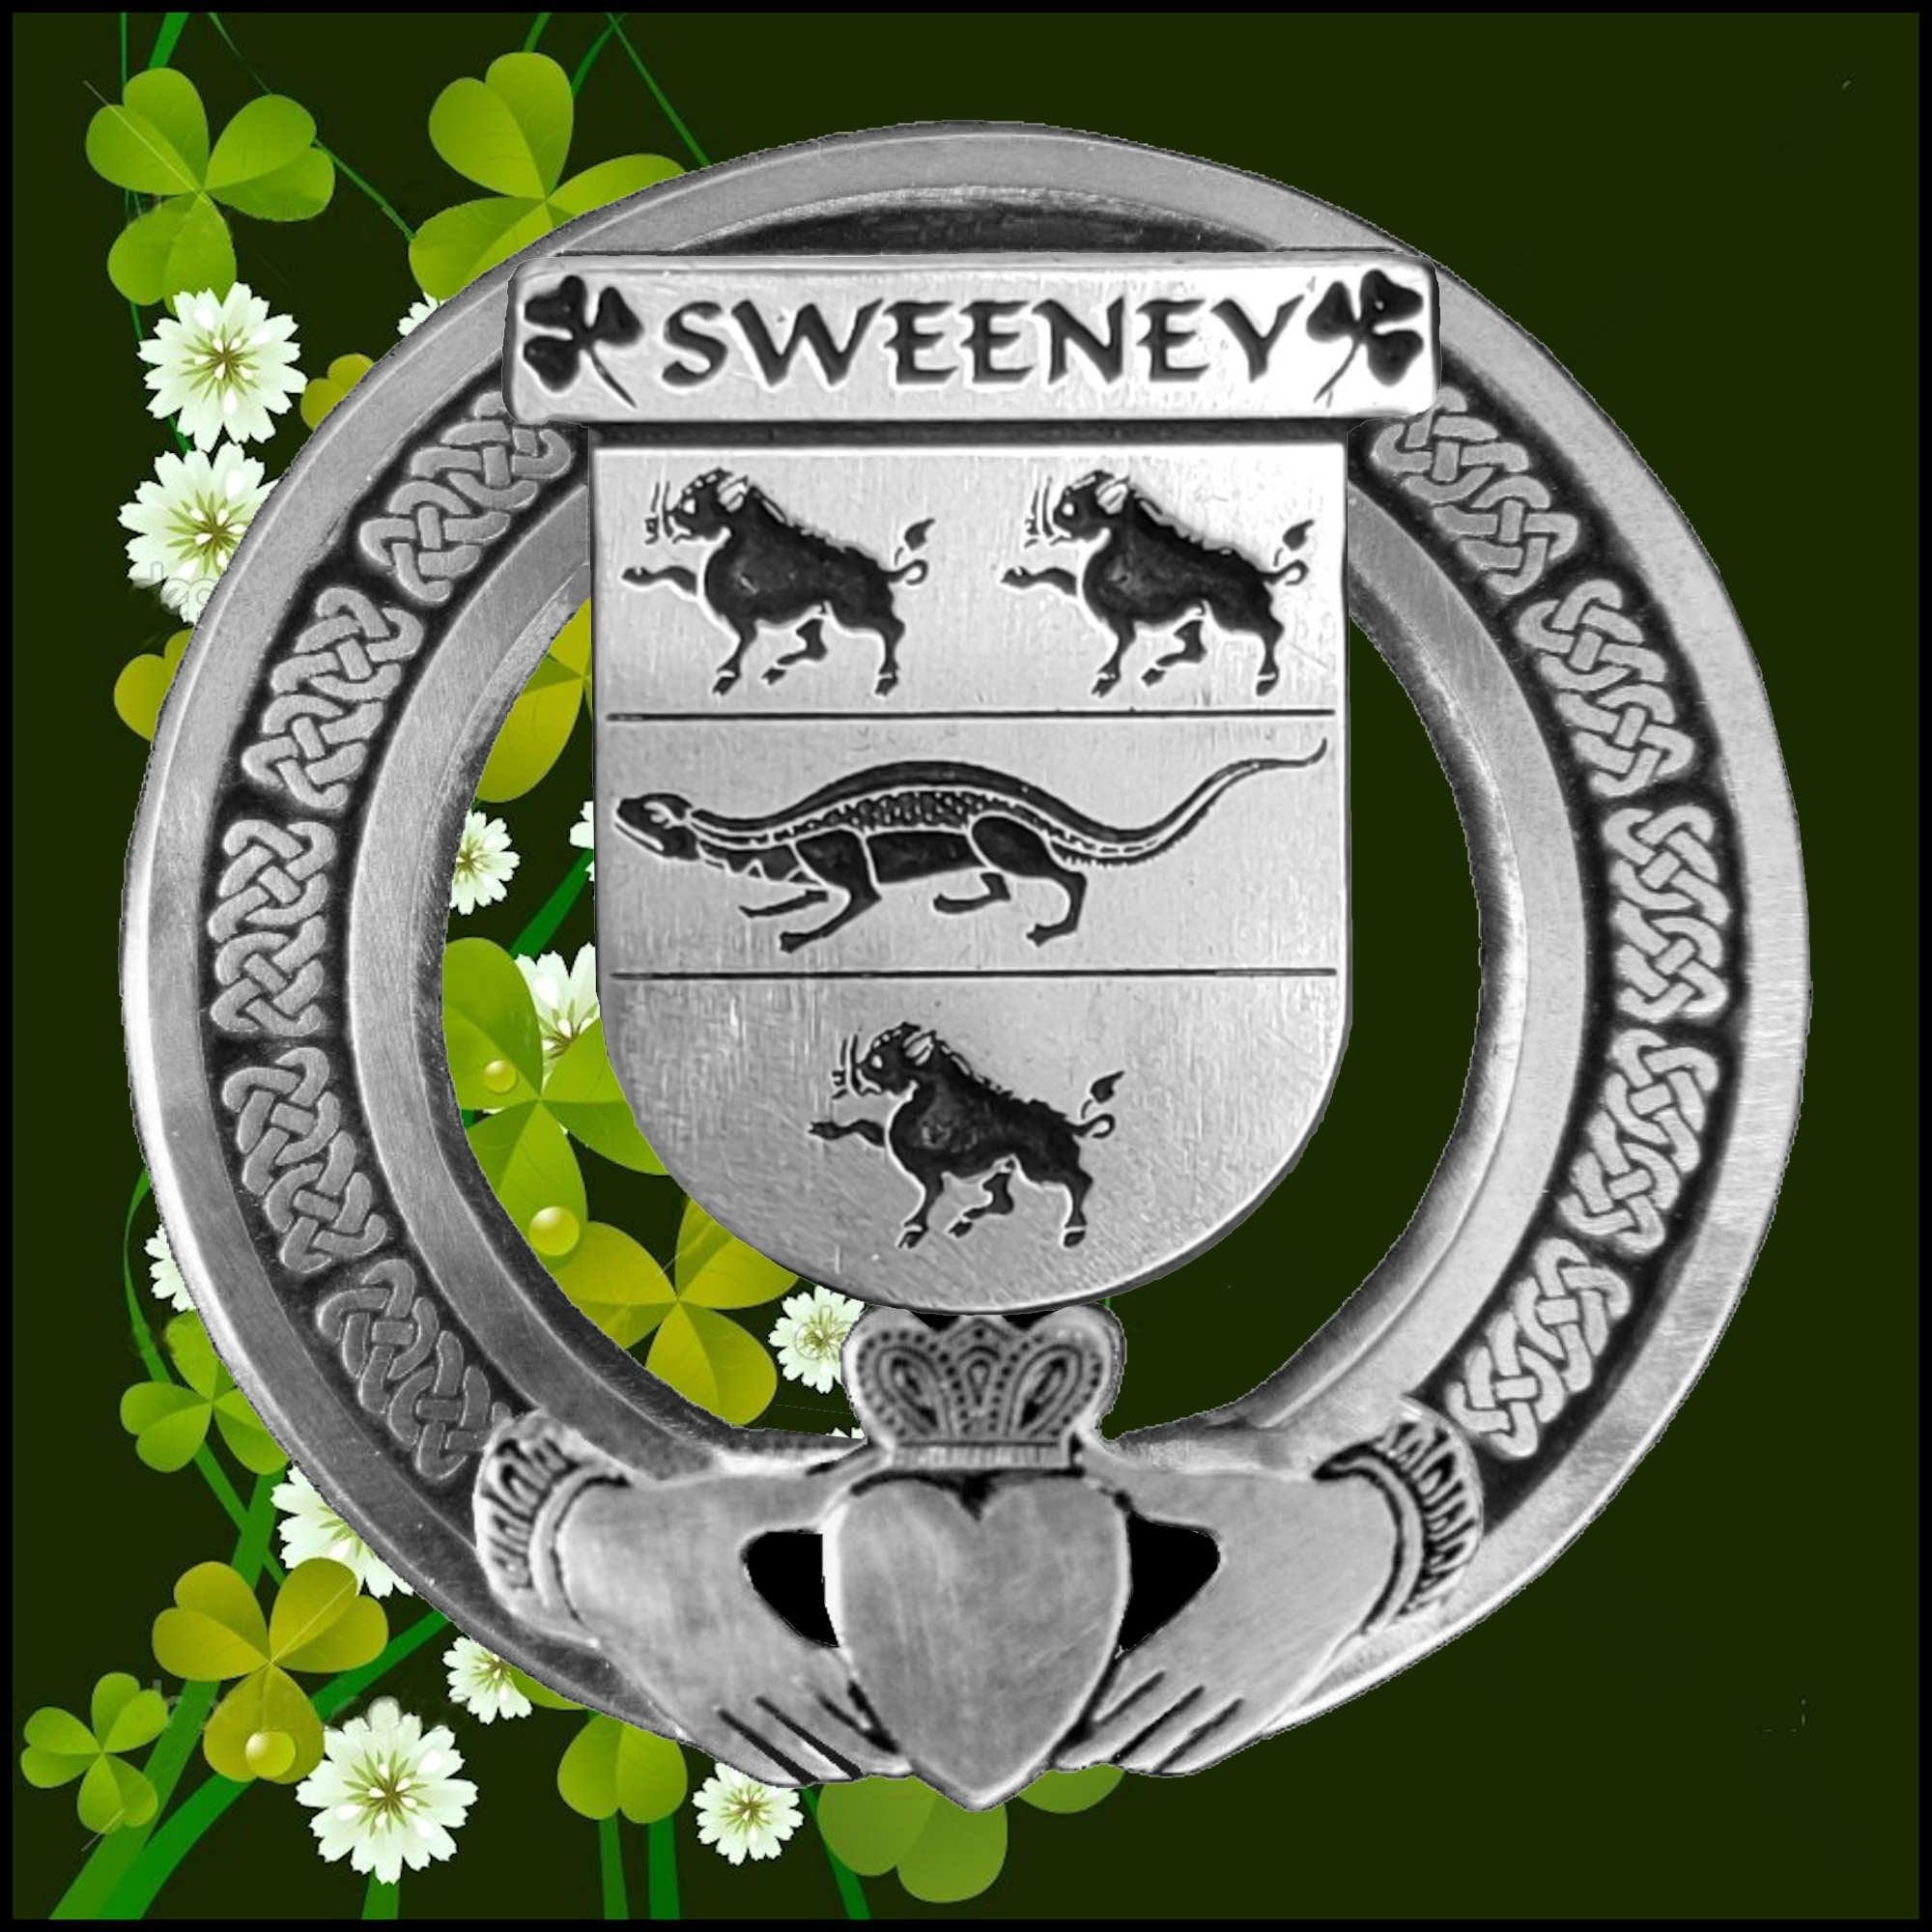 sweeney family crest